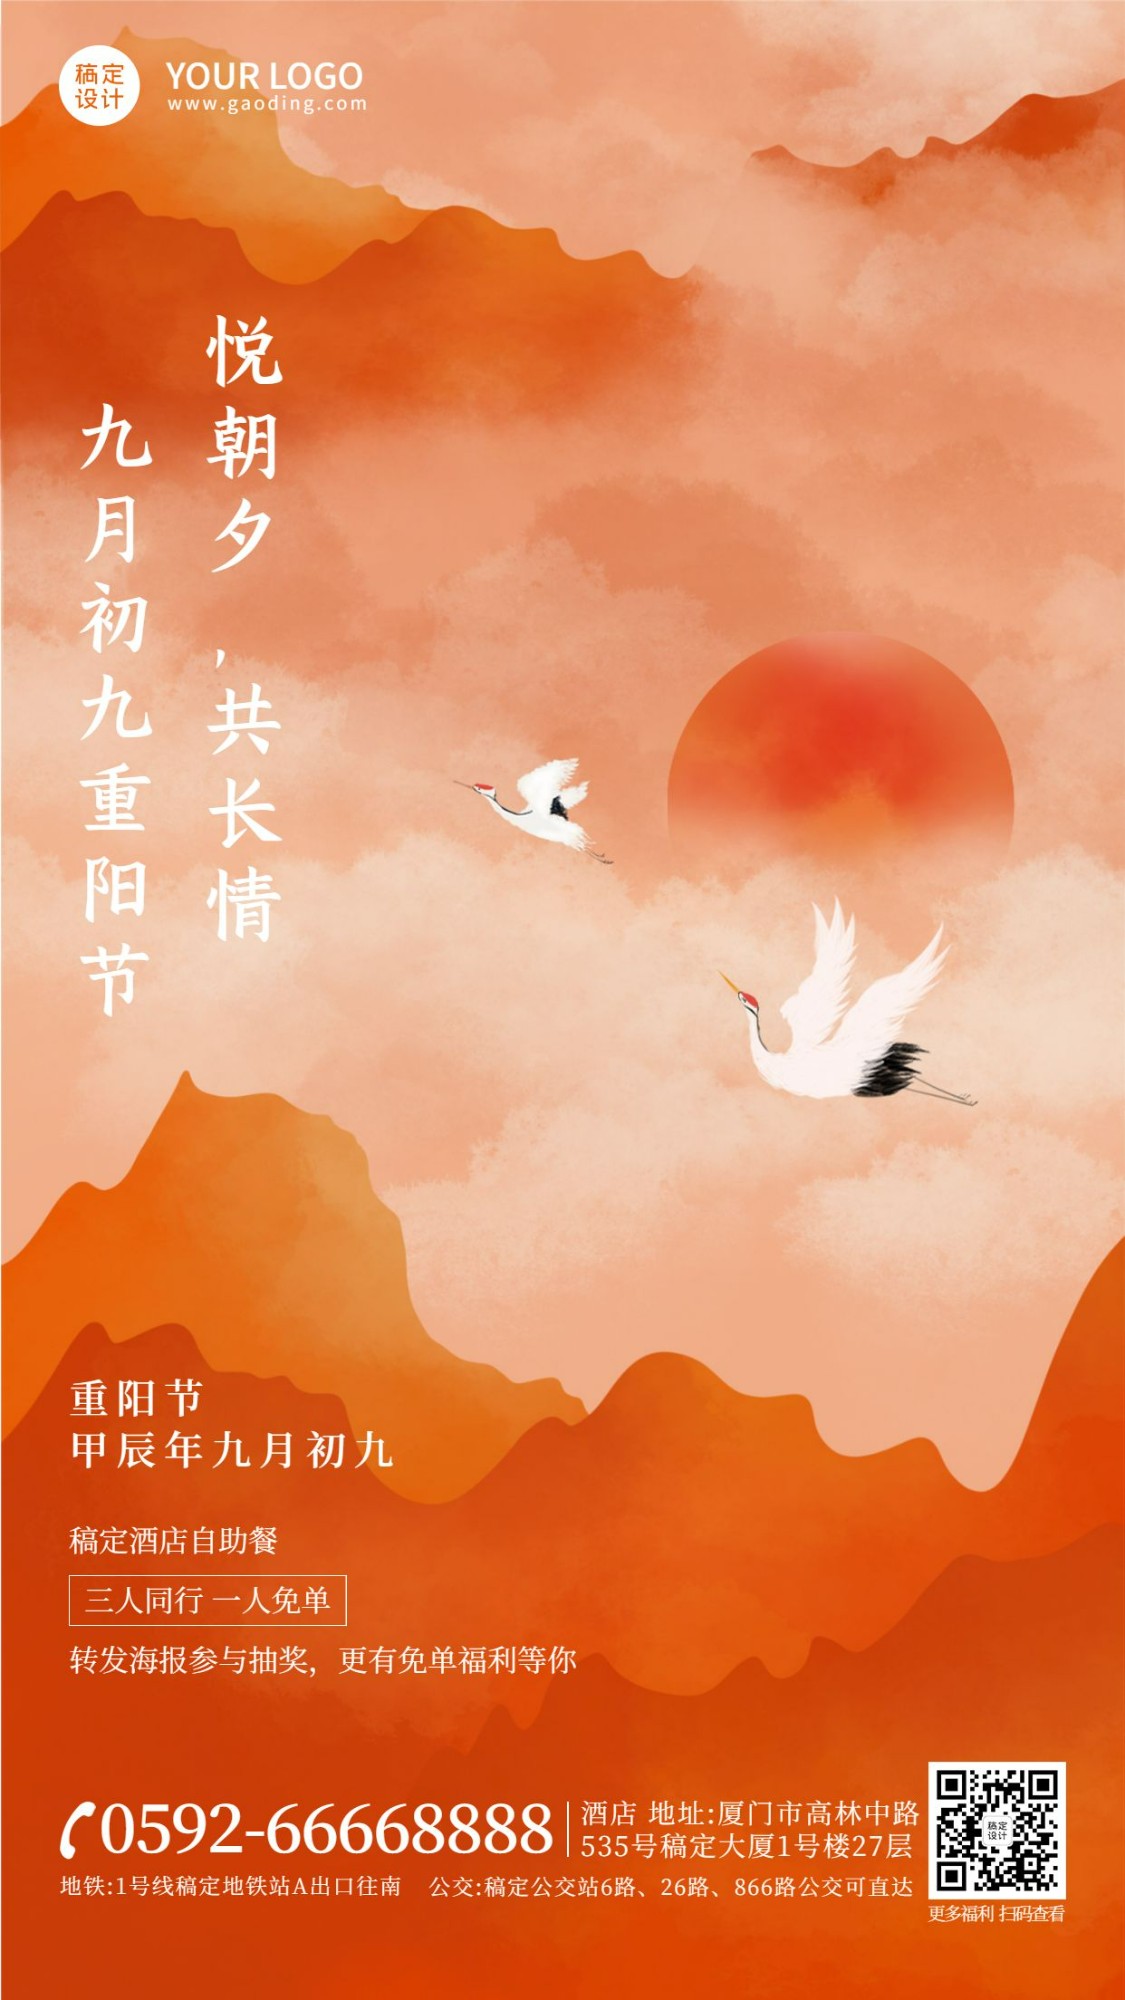 重阳节节日营销中国风手机海报预览效果